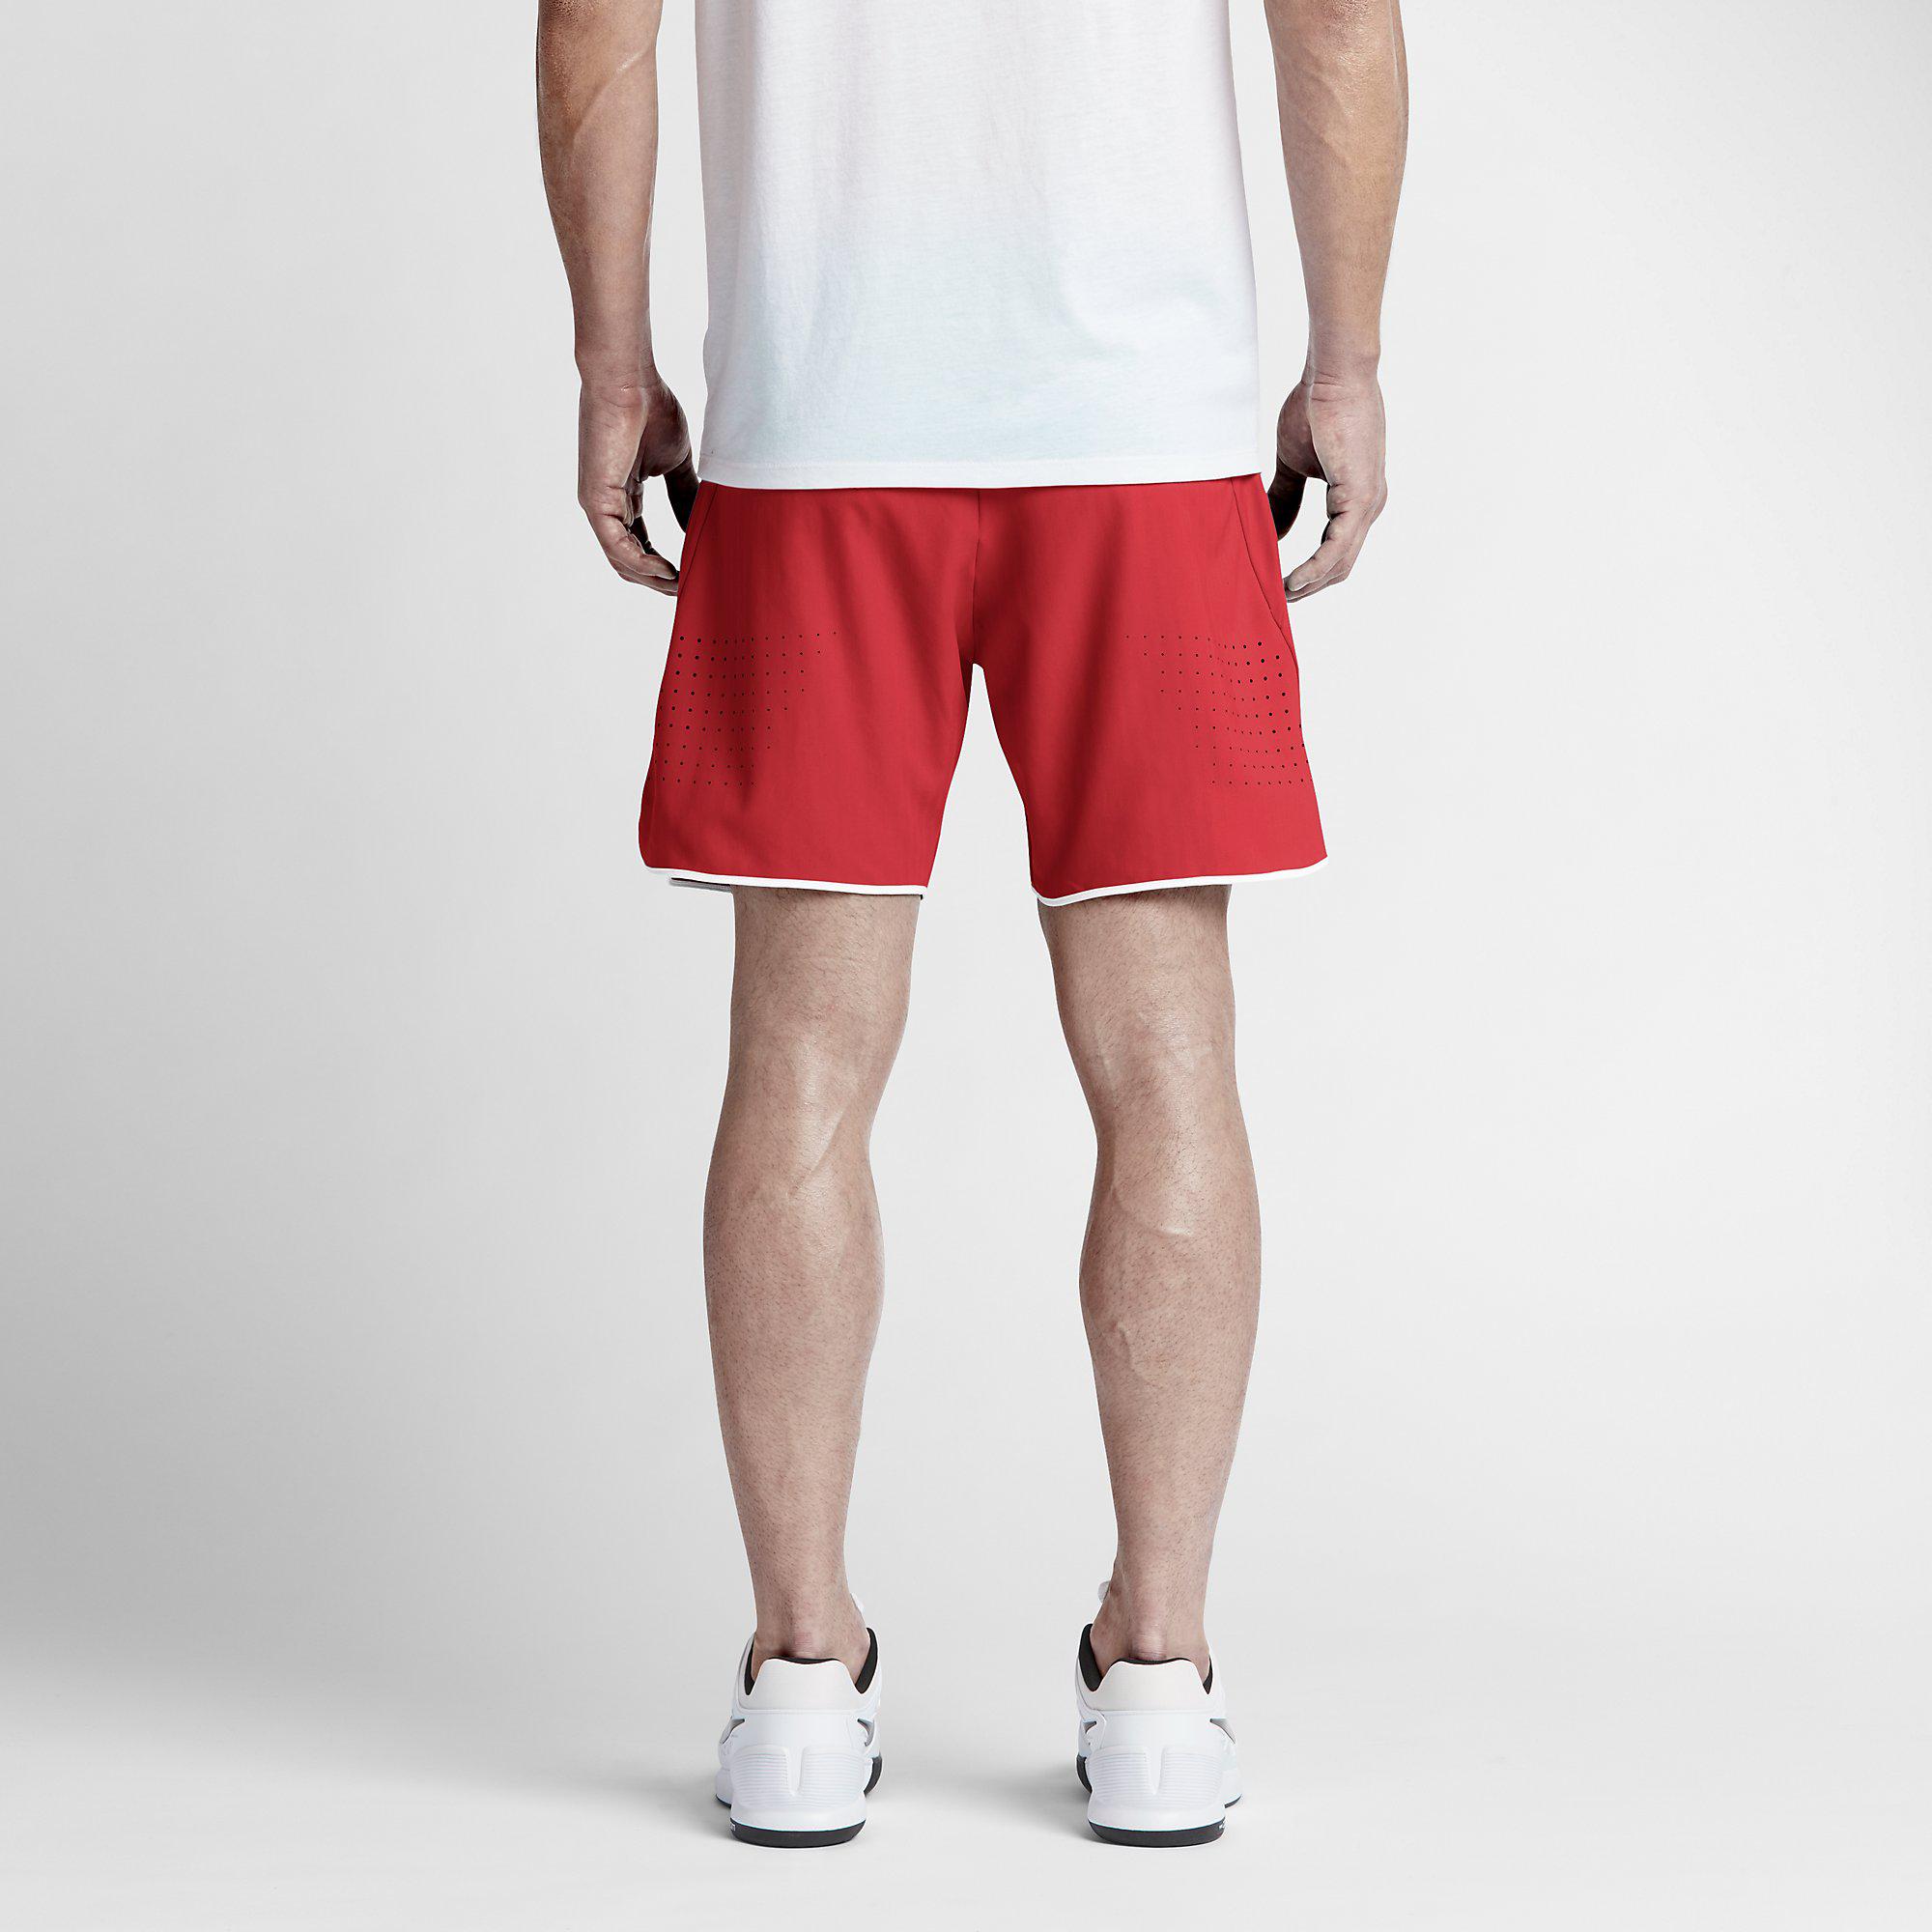 Nike Mens Premier Gladiator 7 Inch Shorts - Light Crimson/White ...